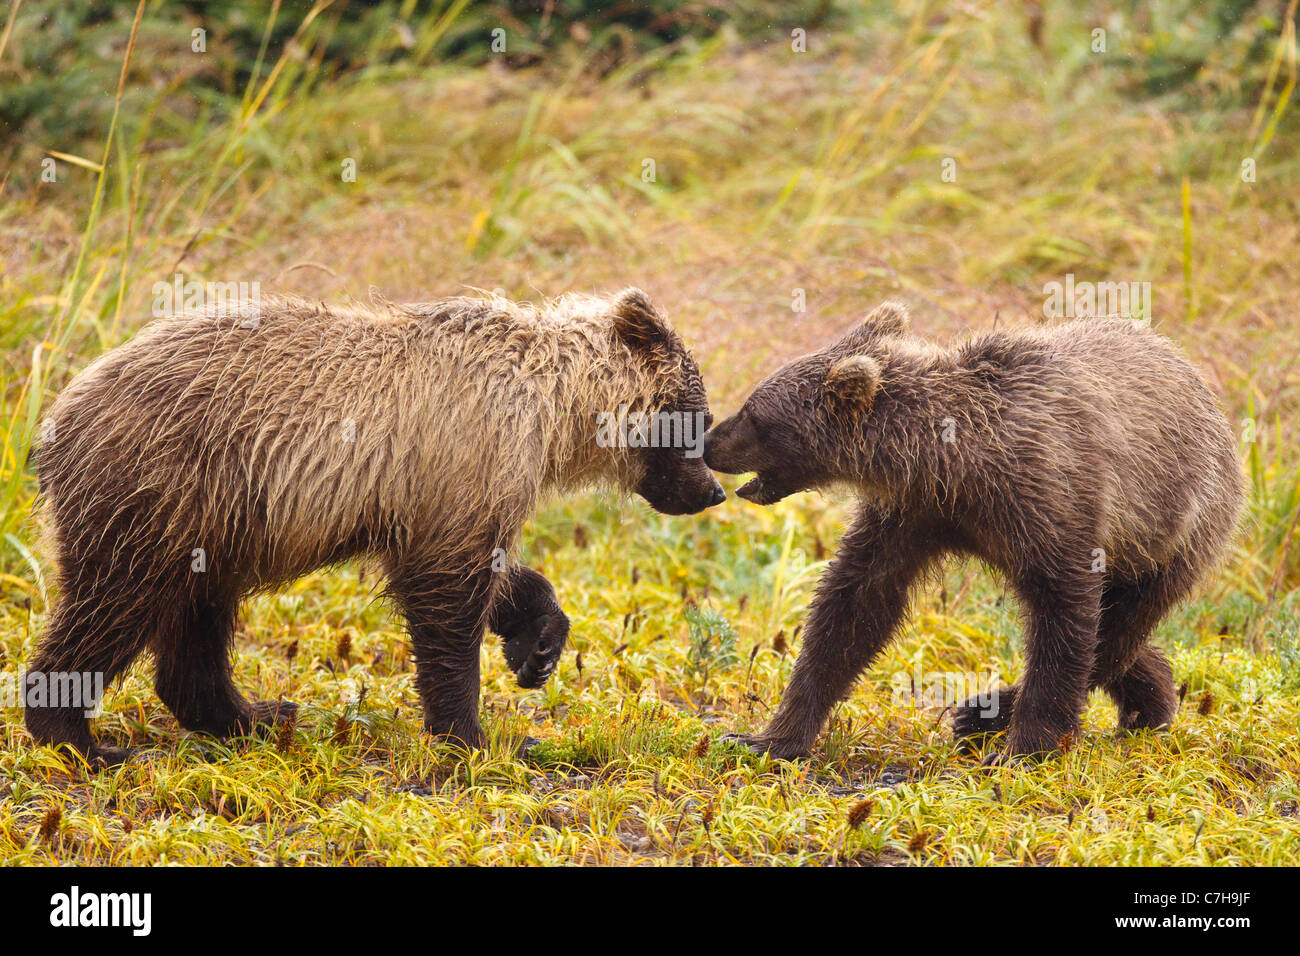 Nordamerikanischen Braunbären (Ursus Arctos Horribilis) jungen spielen in einem Feld, Lake-Clark-Nationalpark, Alaska, Vereinigte Staaten von Amerika Stockfoto